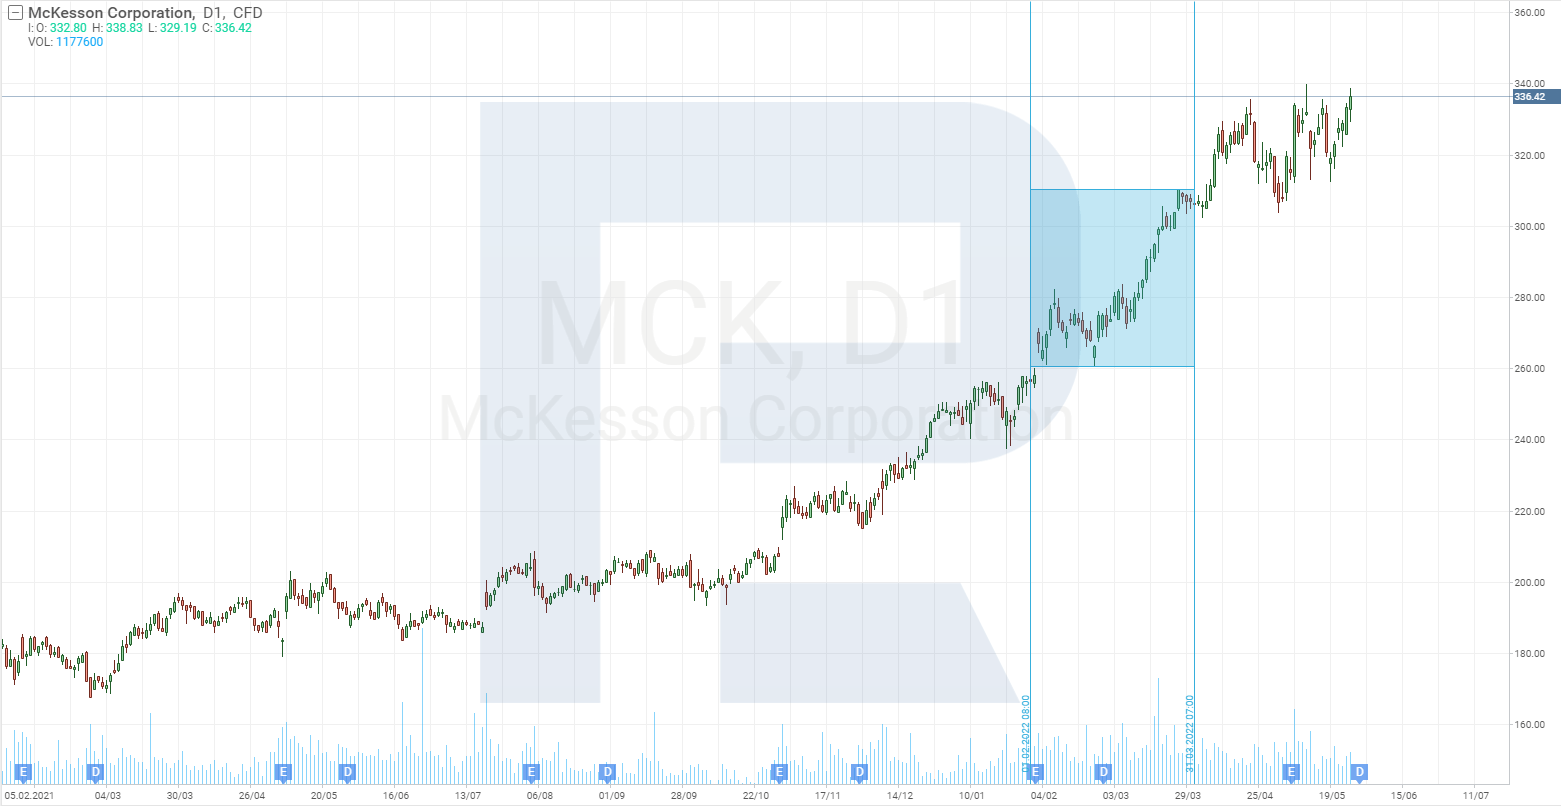 กราฟราคาหุ้น McKesson Corporation